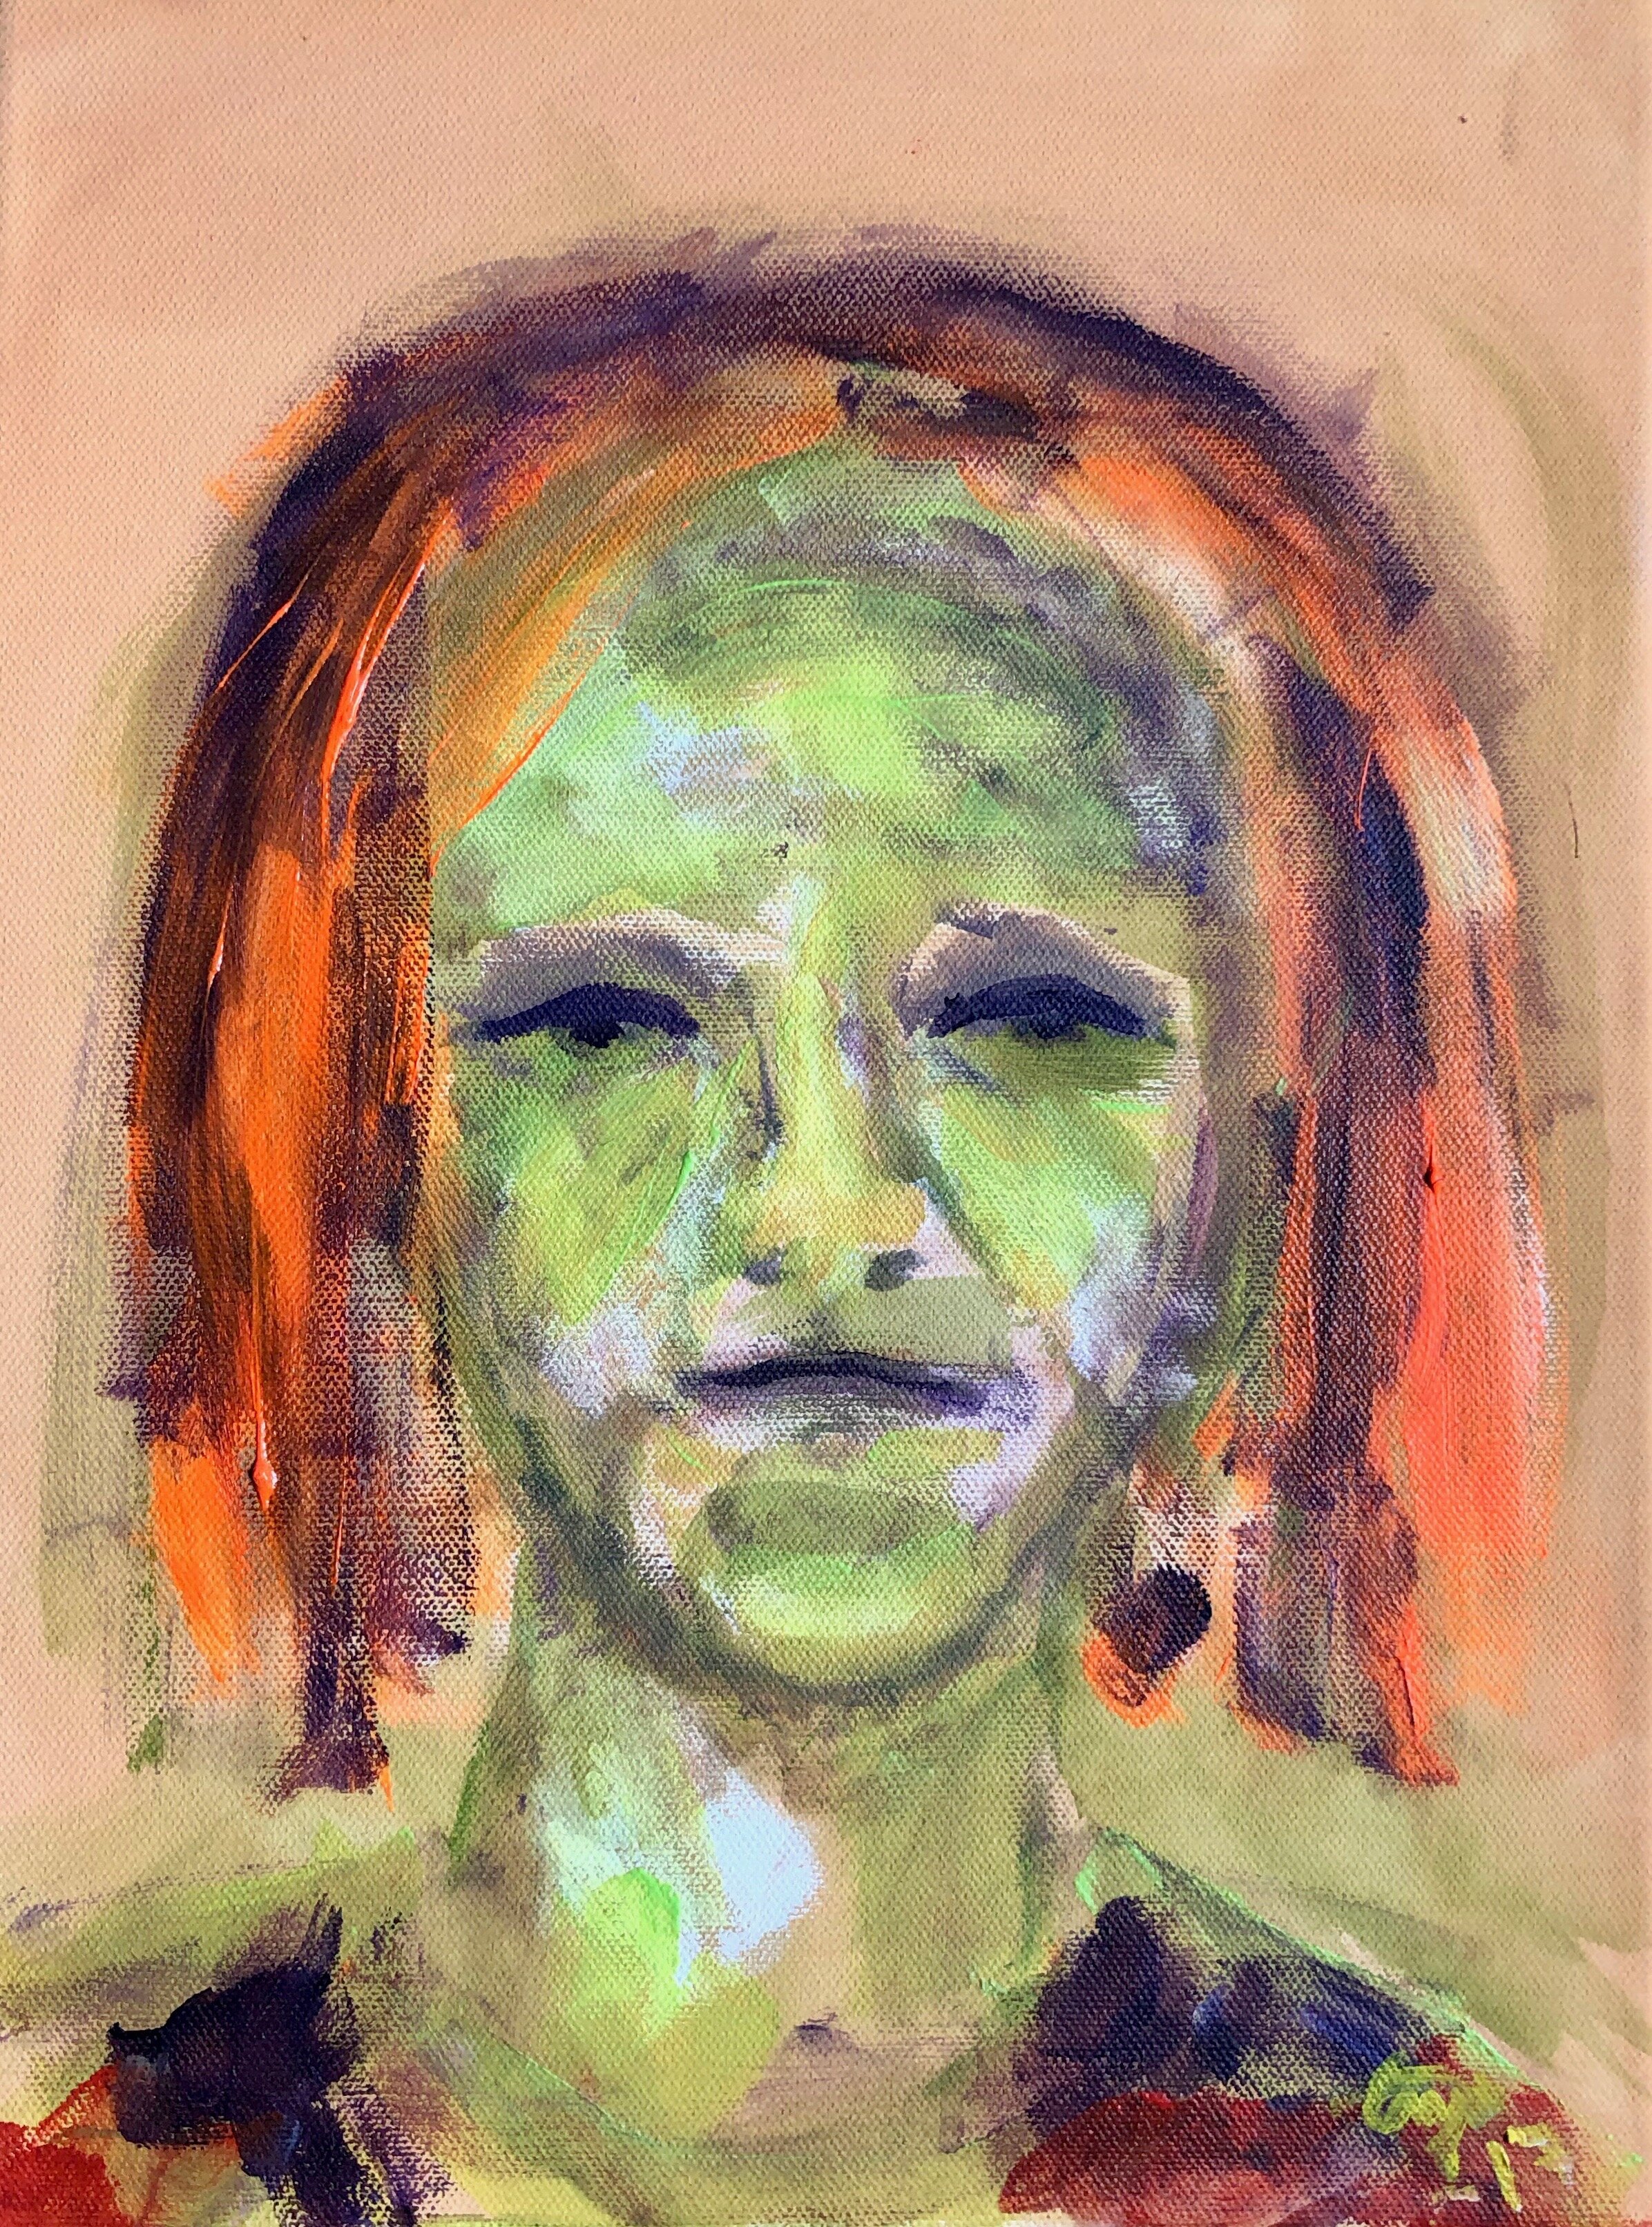  HYGIENIST, 2017, acrylic on canvas, 40x30cm 